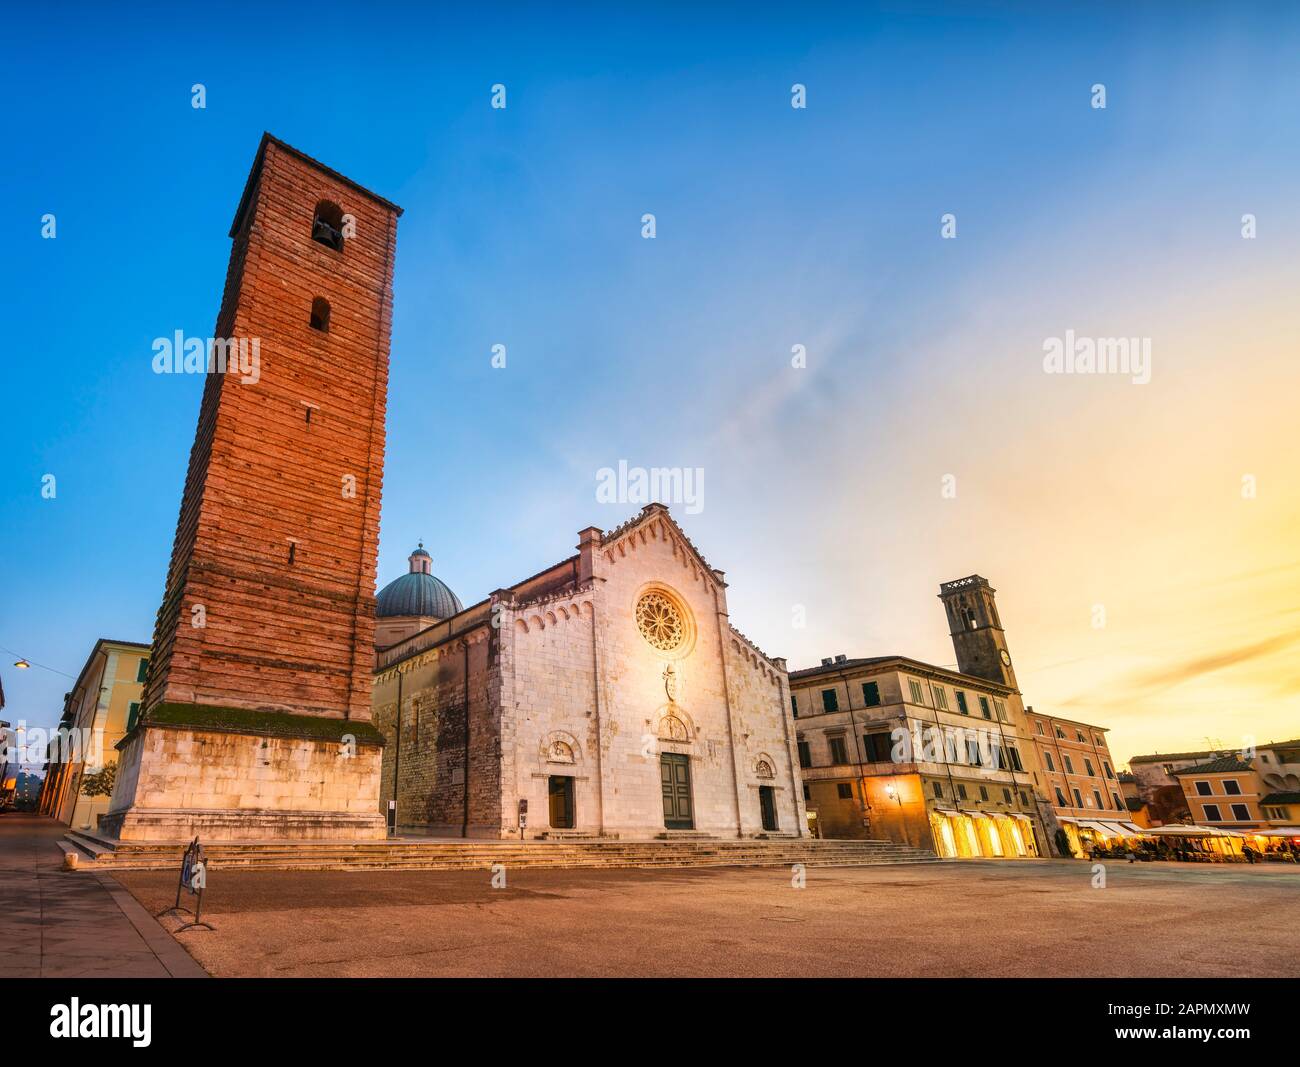 Pietrasanta vue sur la vieille ville au coucher du soleil, la cathédrale de San Martino et Torre civica. Versilia Lucca Toscane Italie Europe Banque D'Images